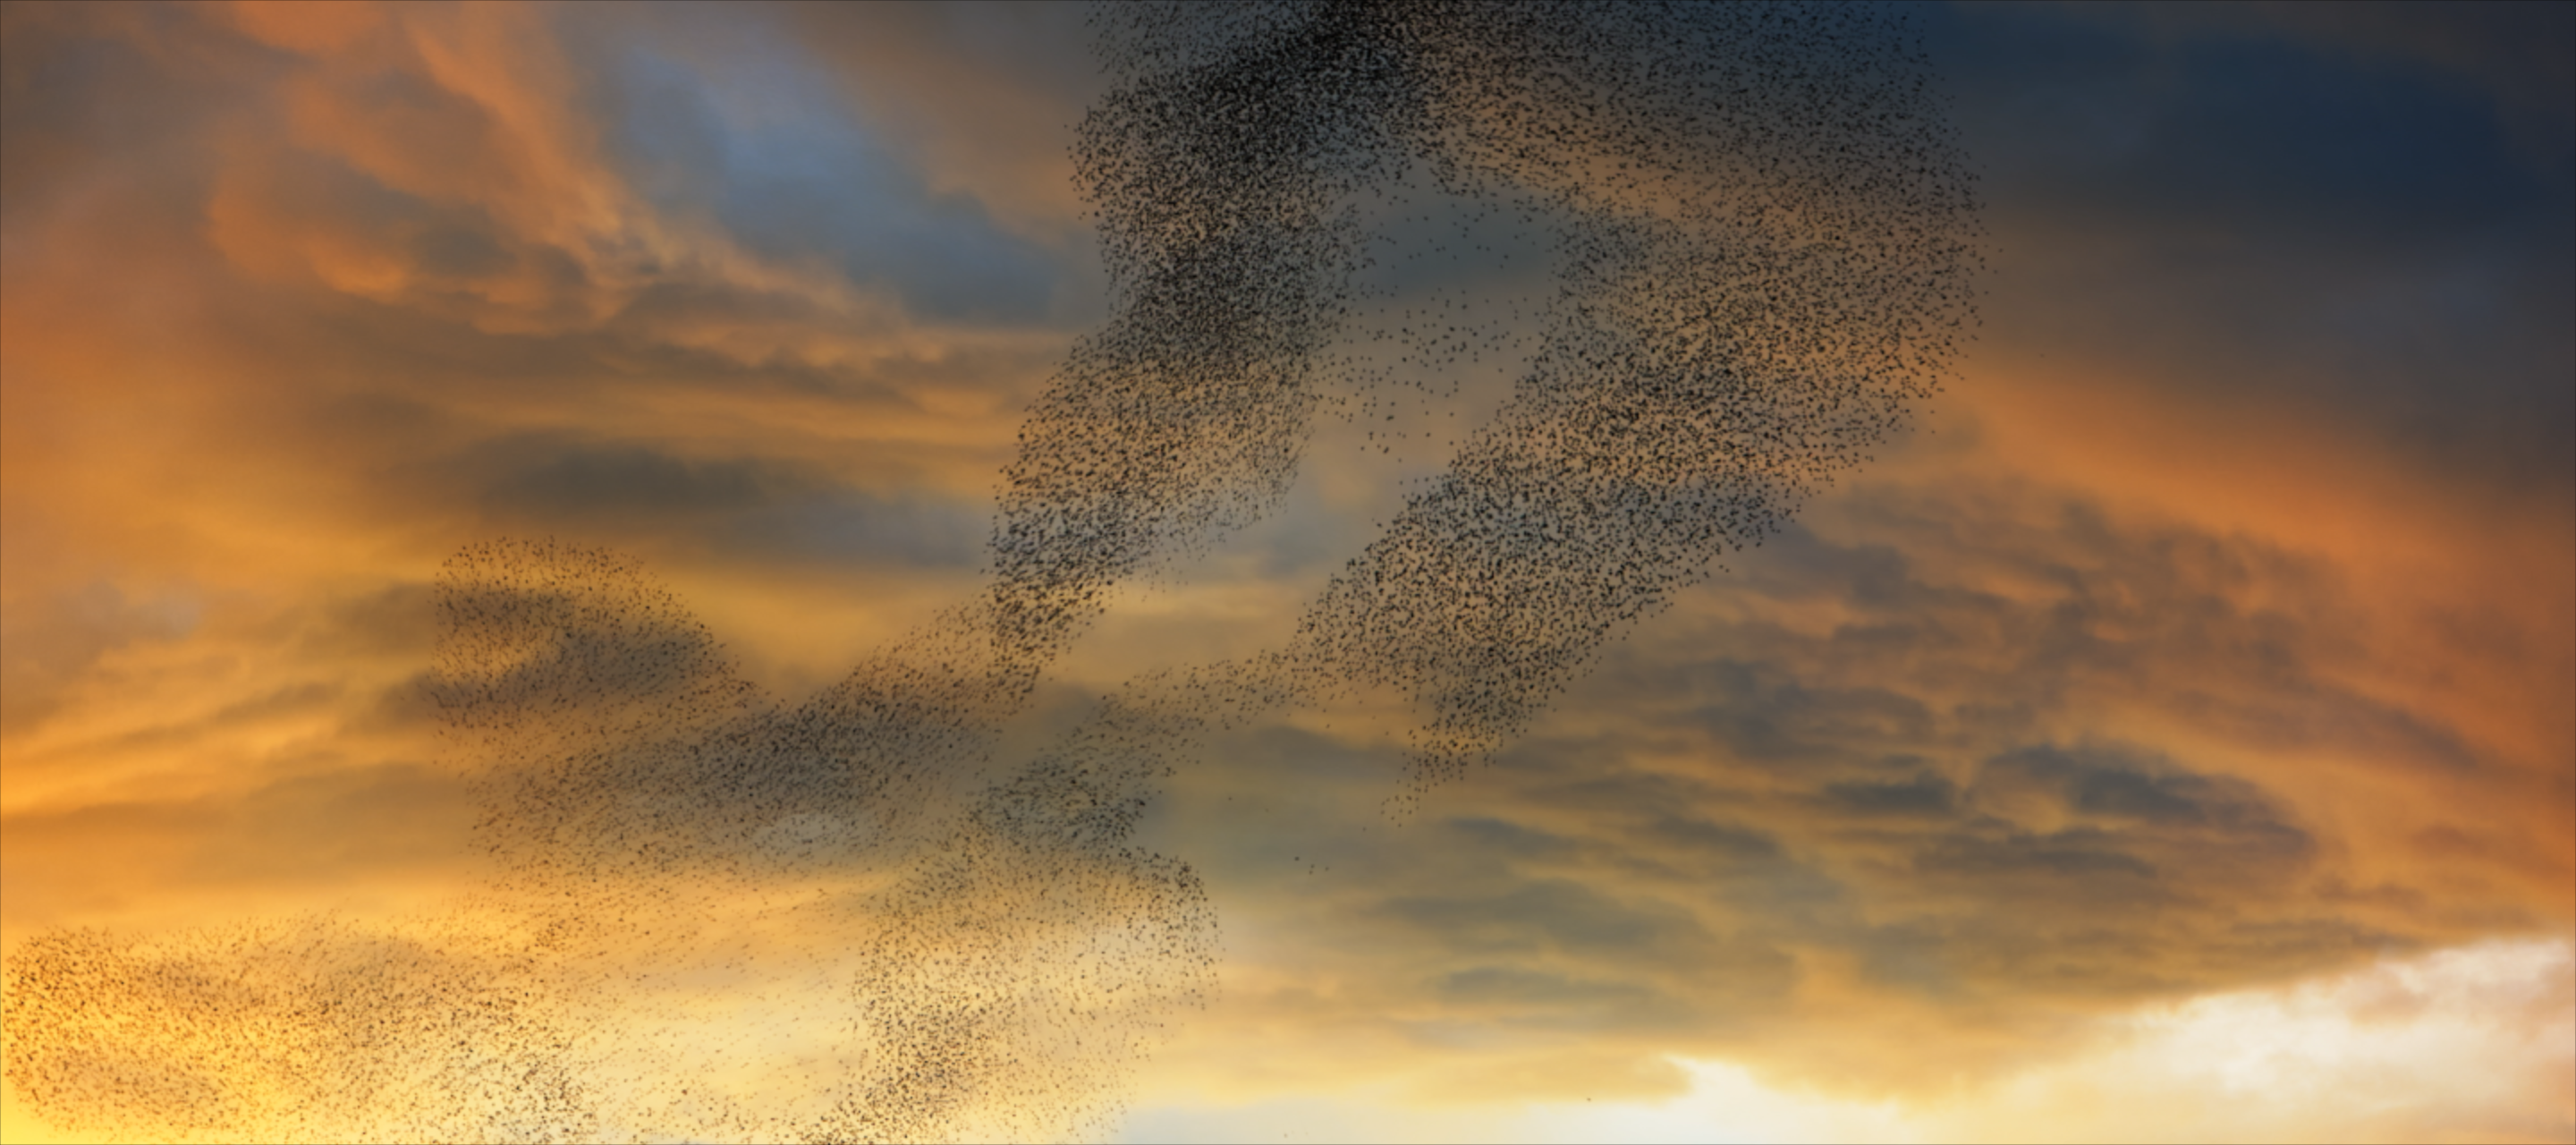 flock of birds flying together in sunset sky